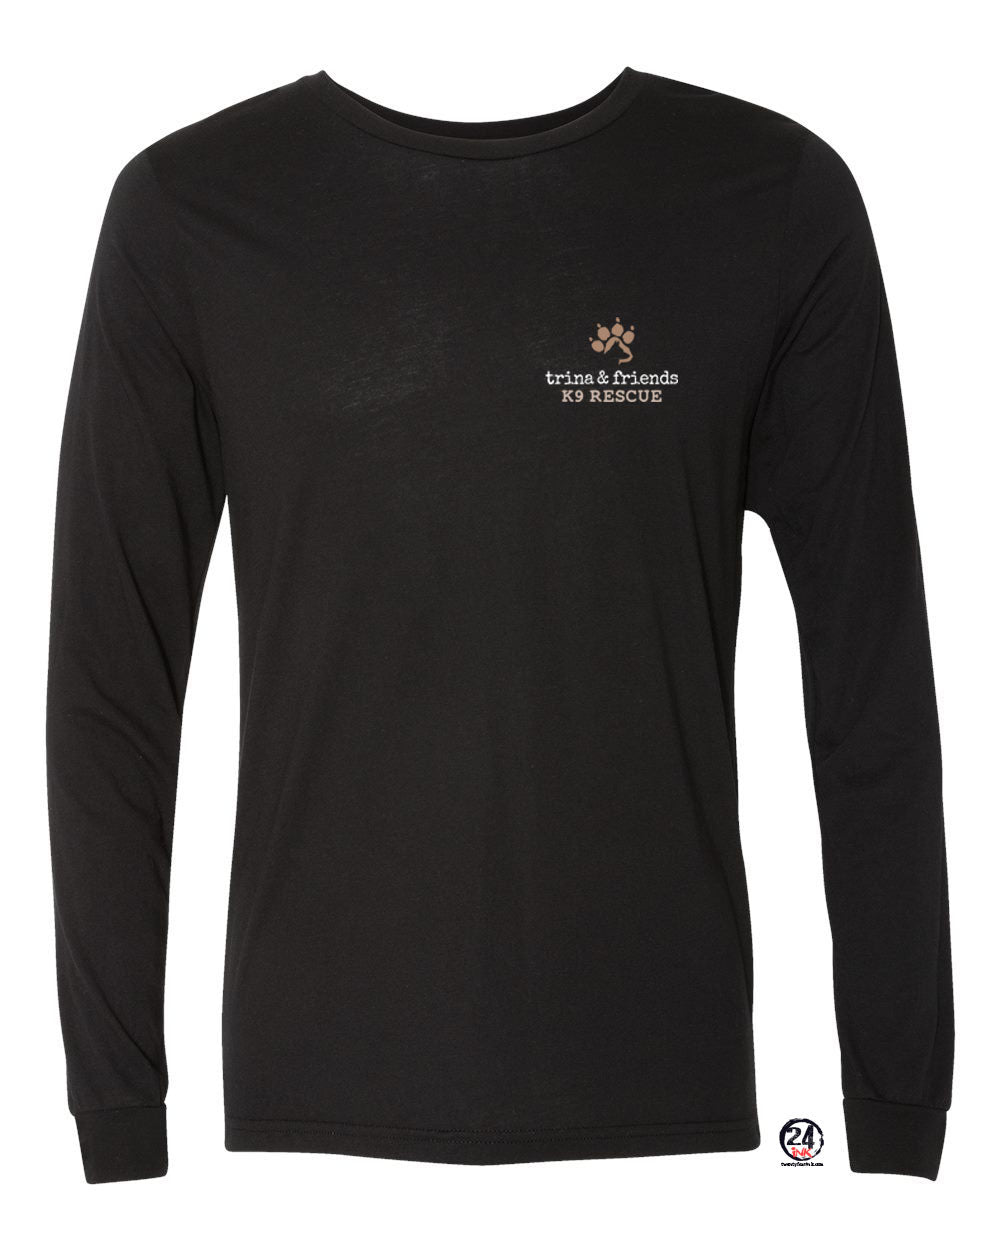 Trina & Friends Design 5 Long Sleeve Shirt